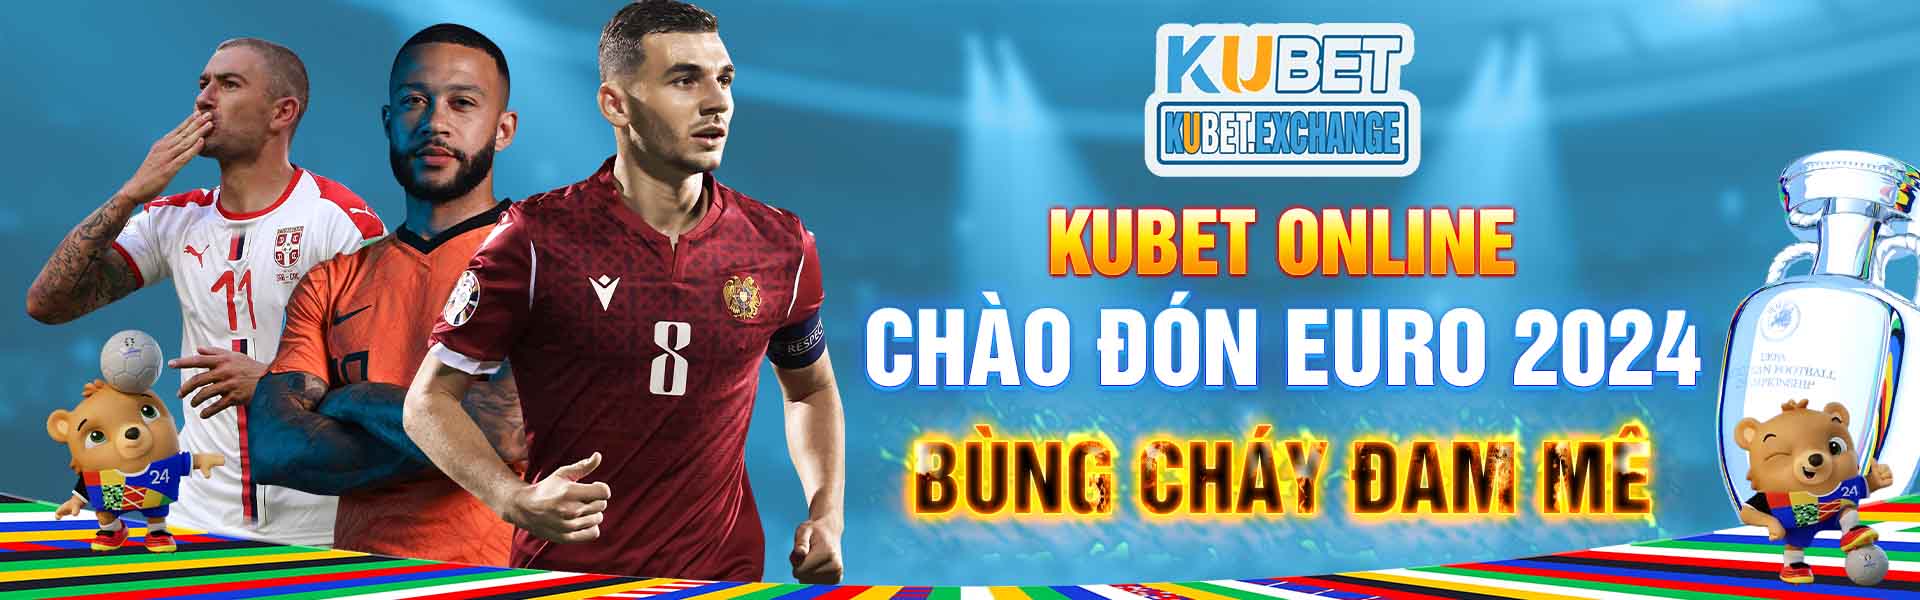 kubet-online-chao-don-euro-2024-bung-chay-dam-me_